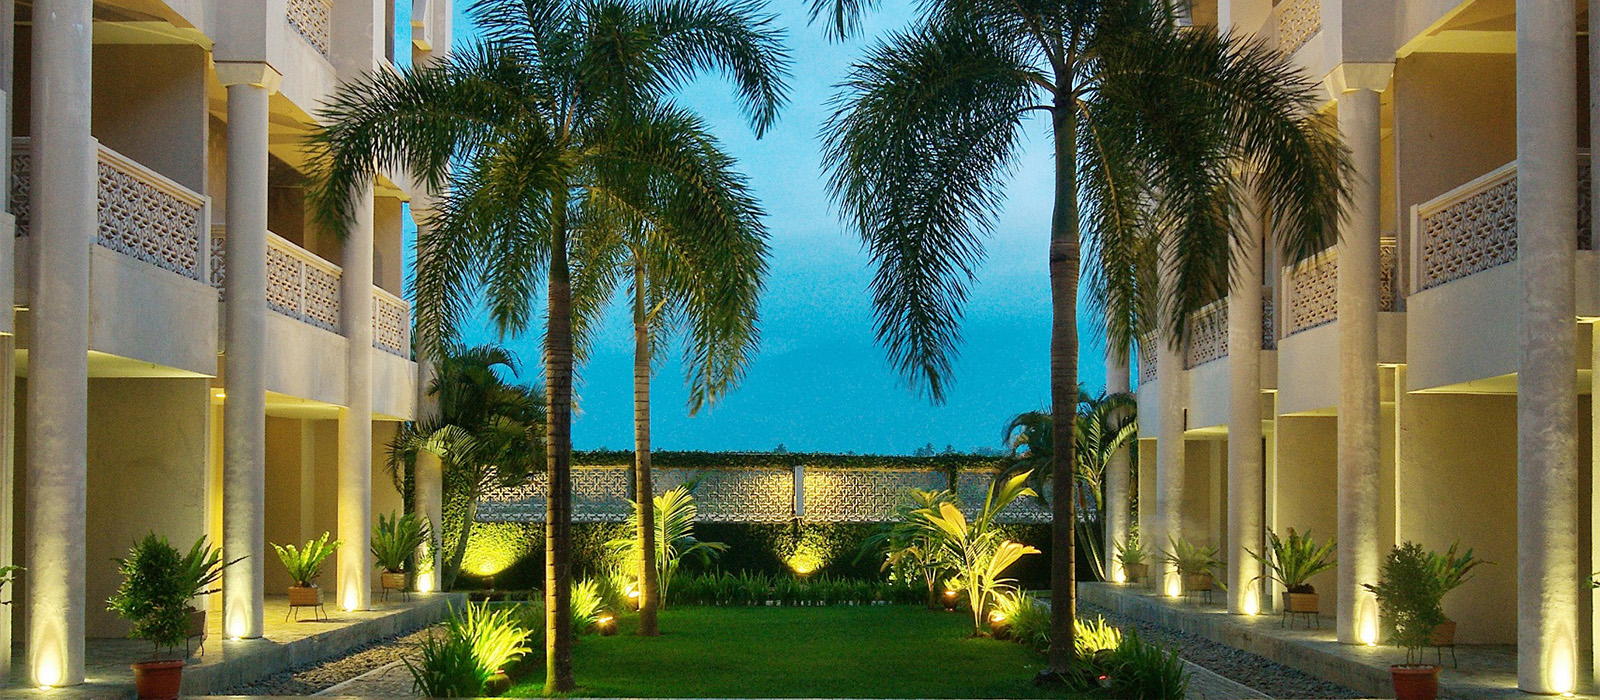 The Pade Hotel Aceh Garden